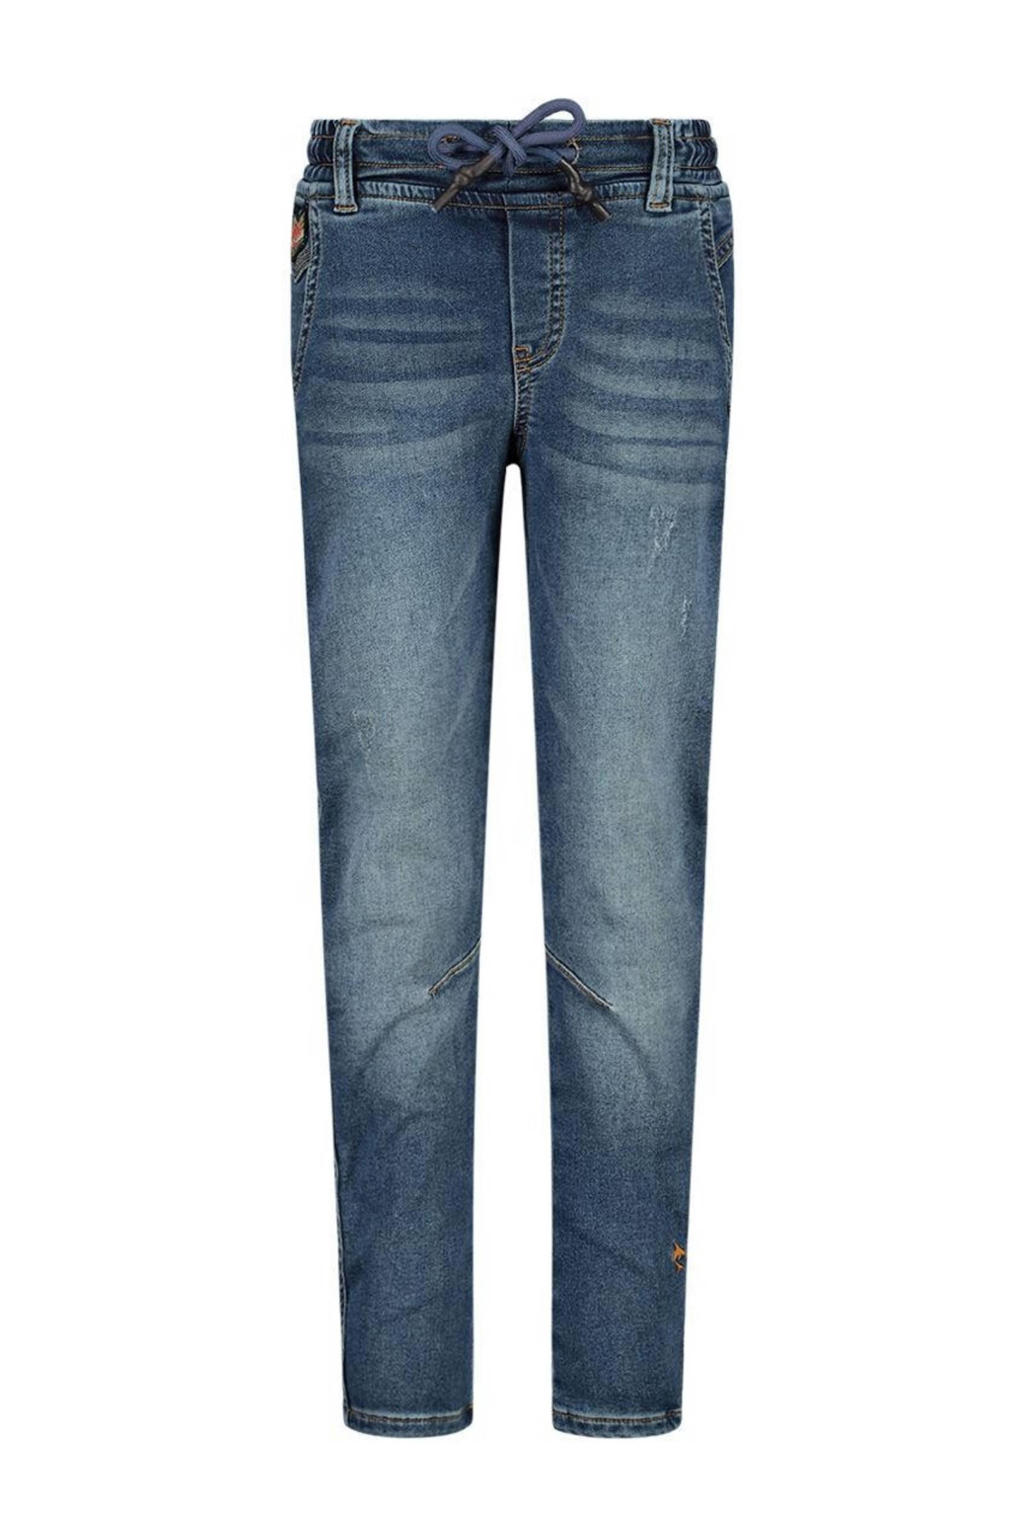 Blauwe jongens Wildfish regular fit jeans van stretchdenim met elastische tailleband met koord